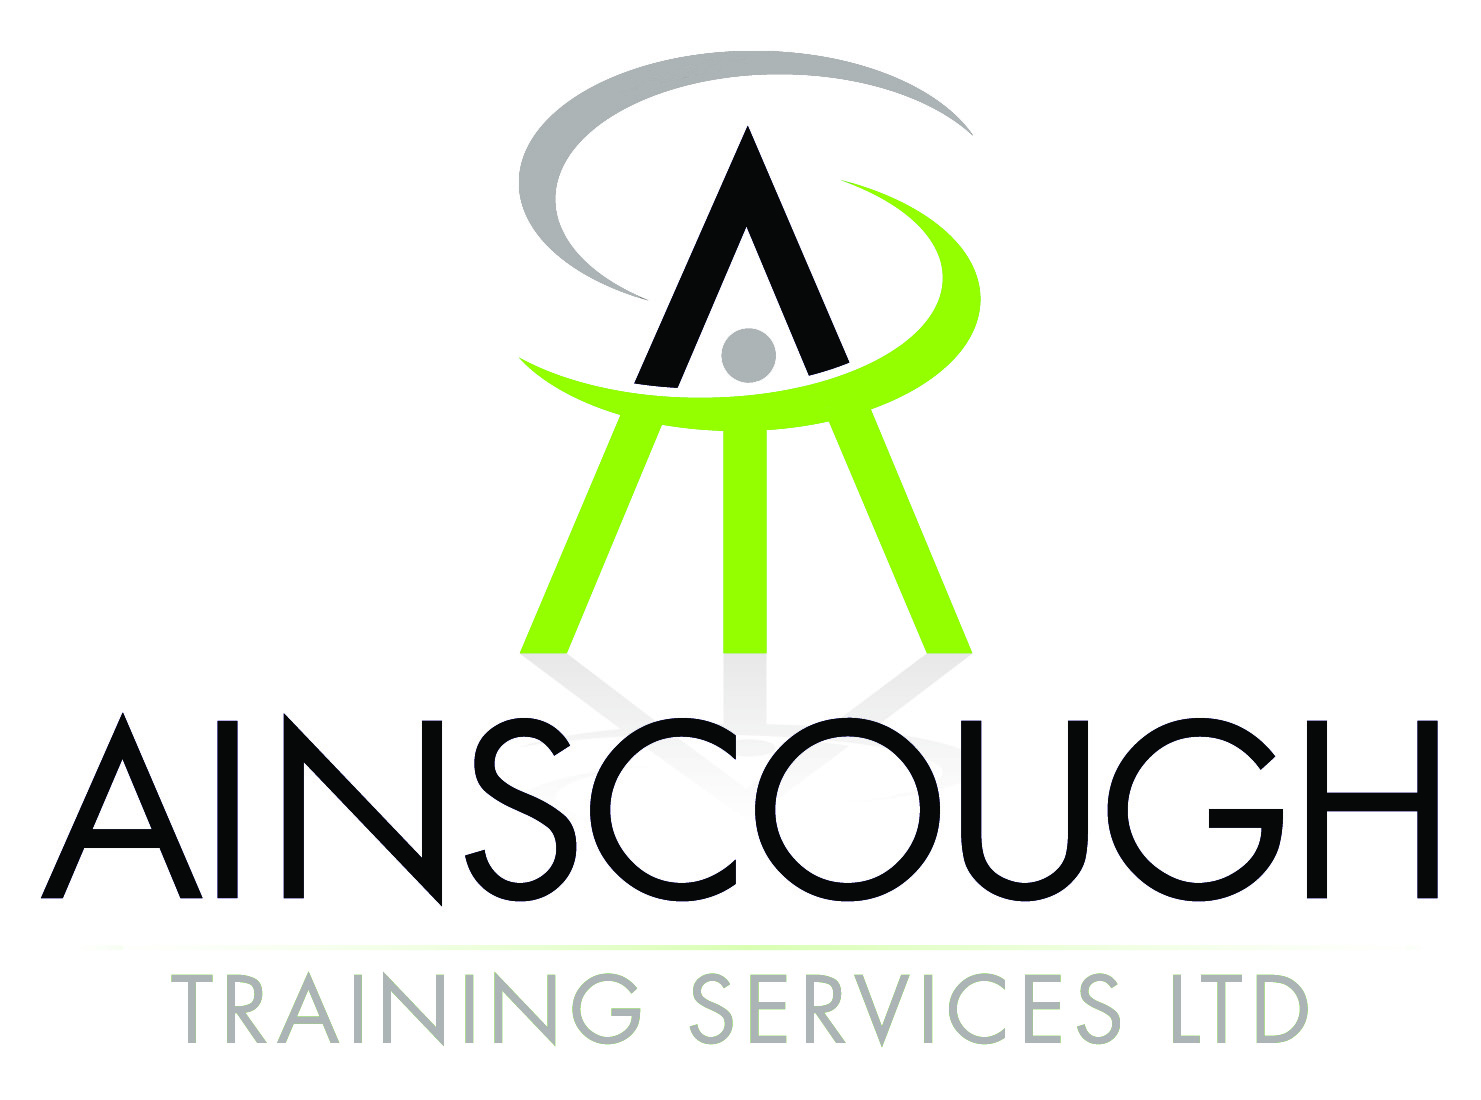 Ainscough Training Services Ltd